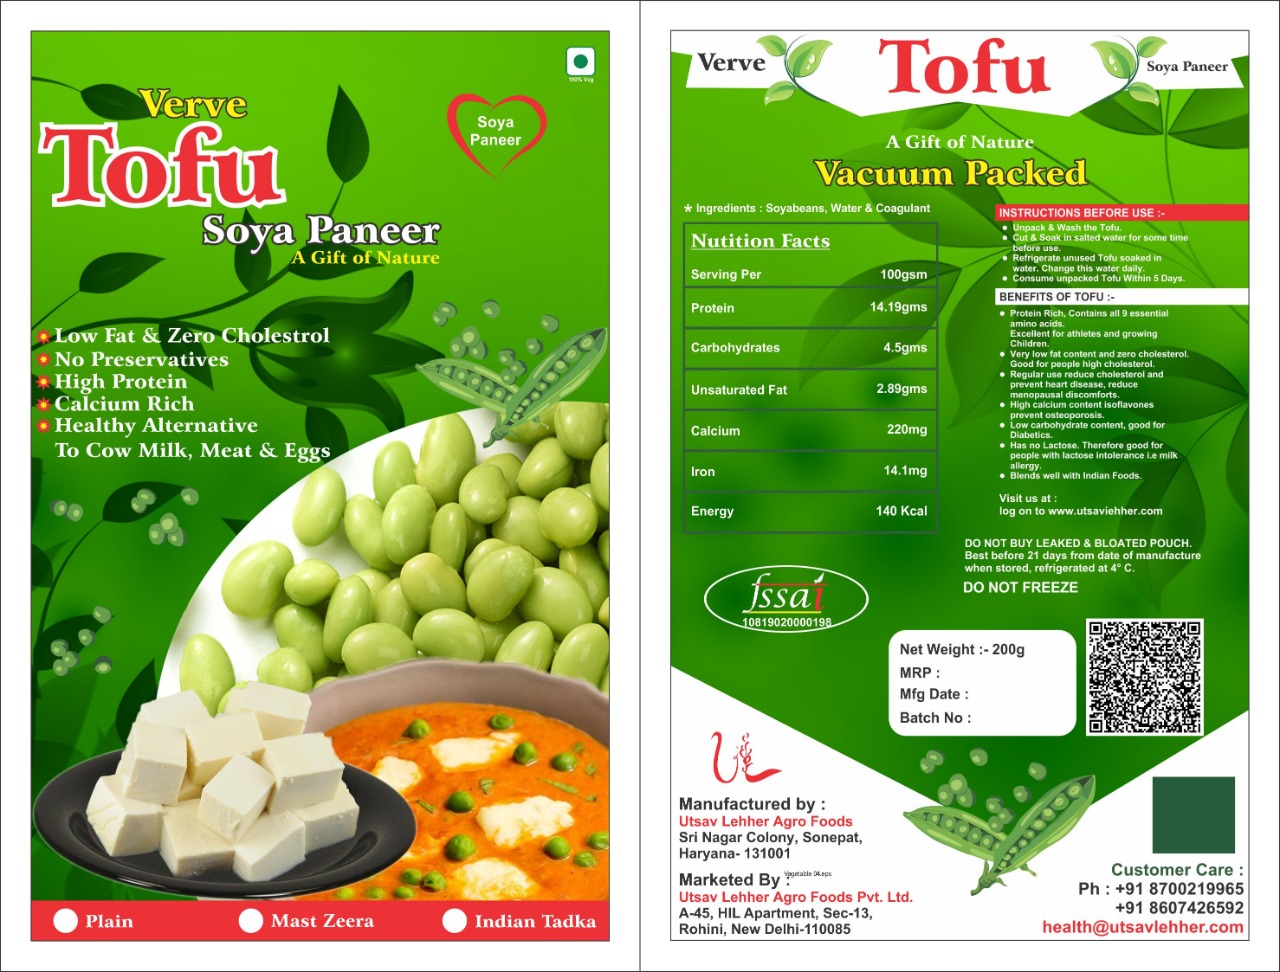 Verve Tofu Soya Paneer